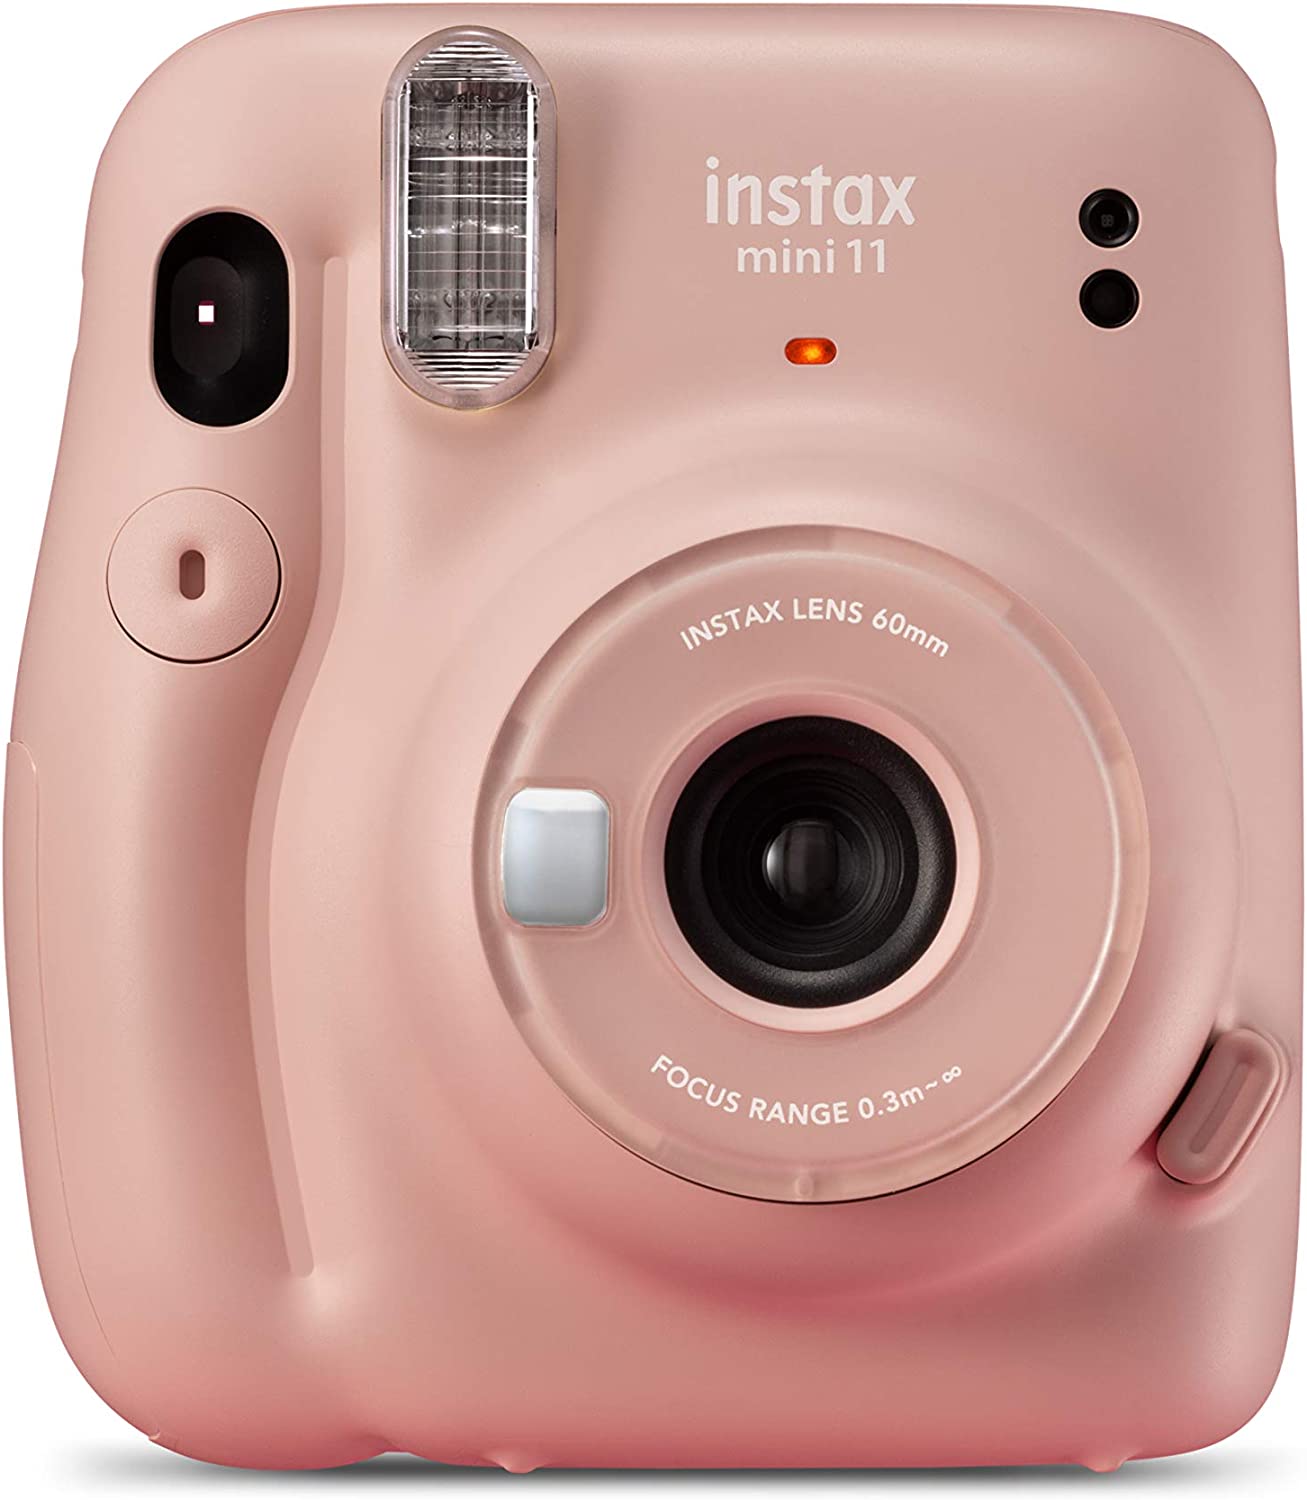 Fujifilm Instax Mini 11 Blush Pink Camara Instantanea - Tamaño de Imagen 62x46mm - Flash Auto - Mini Espejo para Selfies - Correa de Mano y 2 Botones de Obturador Diferentes